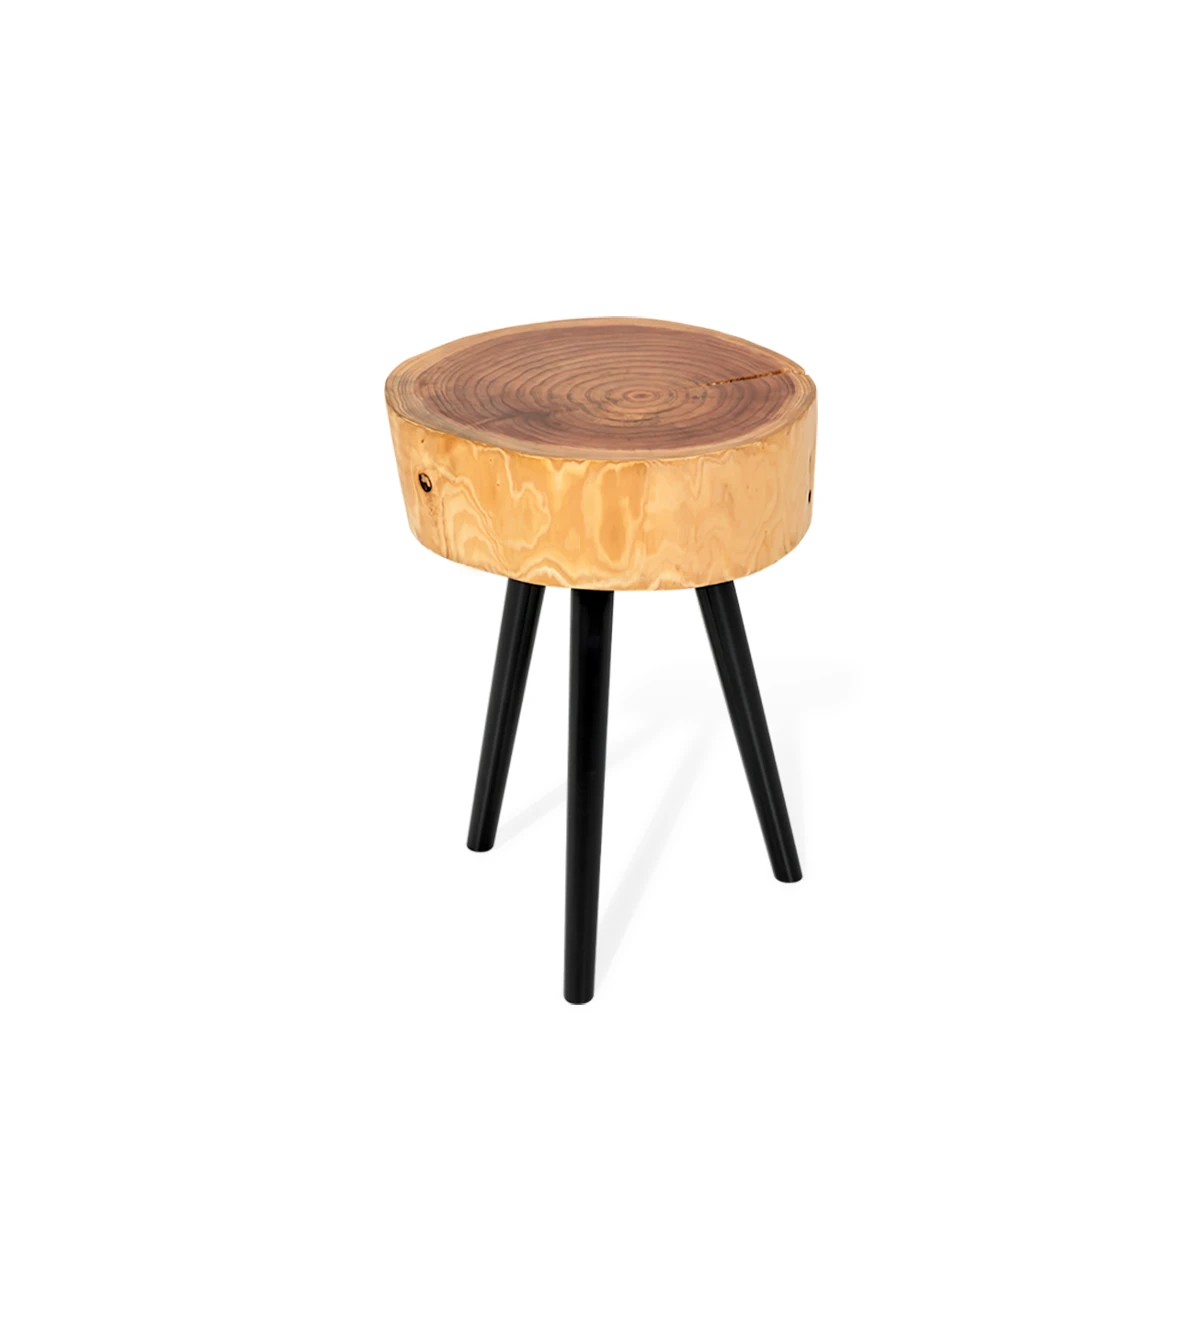 Table d'Appui tronc en bois de cryptoméria naturel, avec 3 pieds tournés laqués noir.